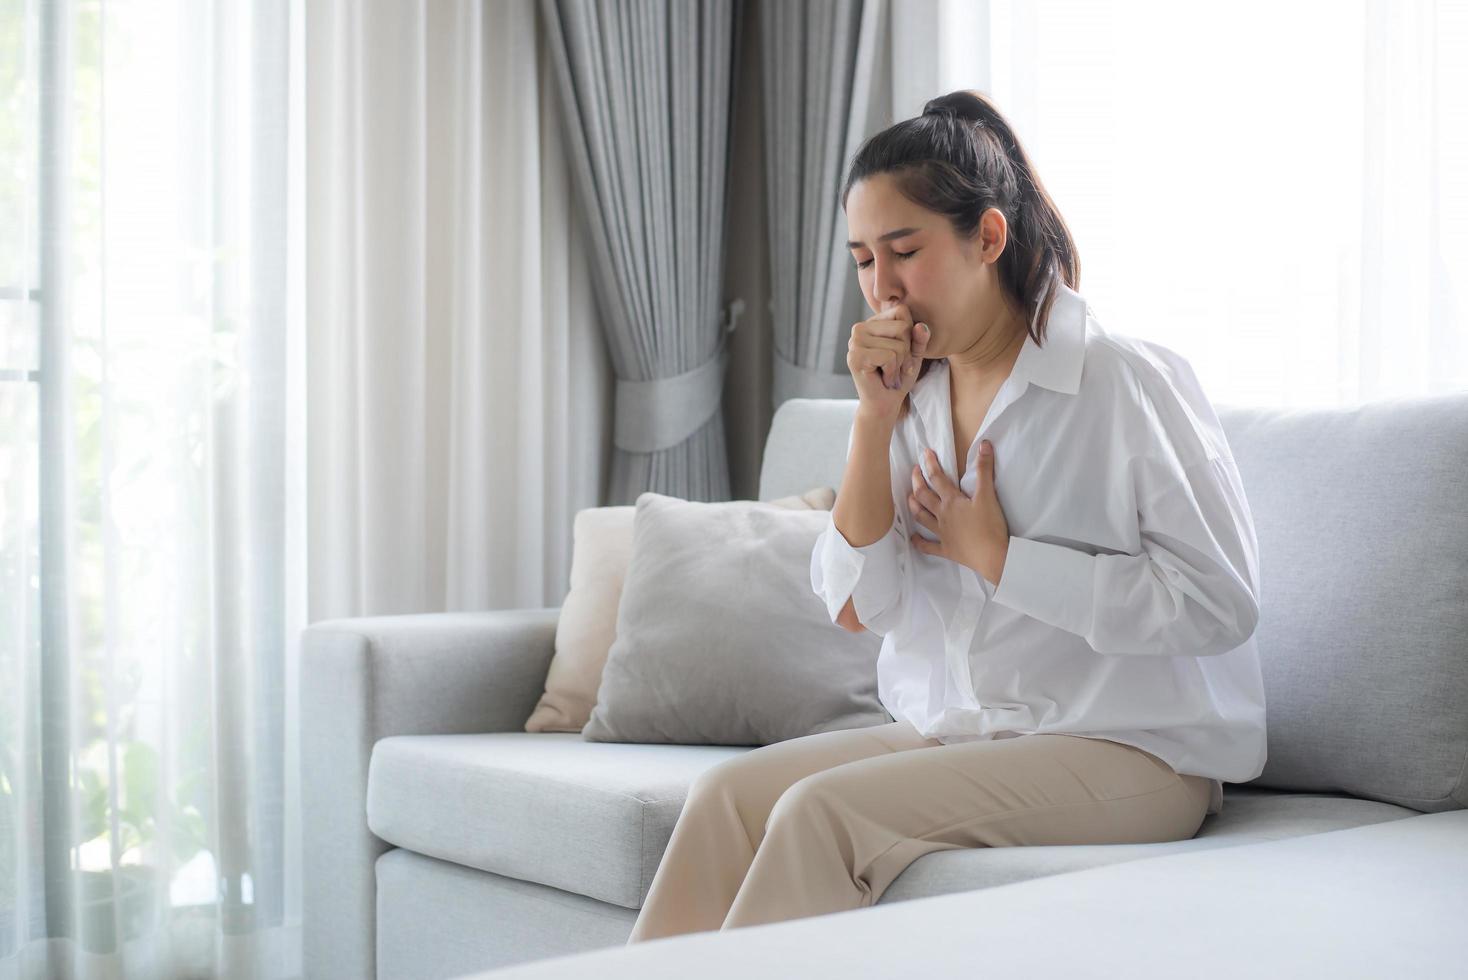 una mujer joven con una camisa blanca se sienta en el sofá de la sala de estar en casa. se llevó la mano al pecho a causa de la tos, el dolor de garganta y el malestar después de varios días de arduo trabajo. foto